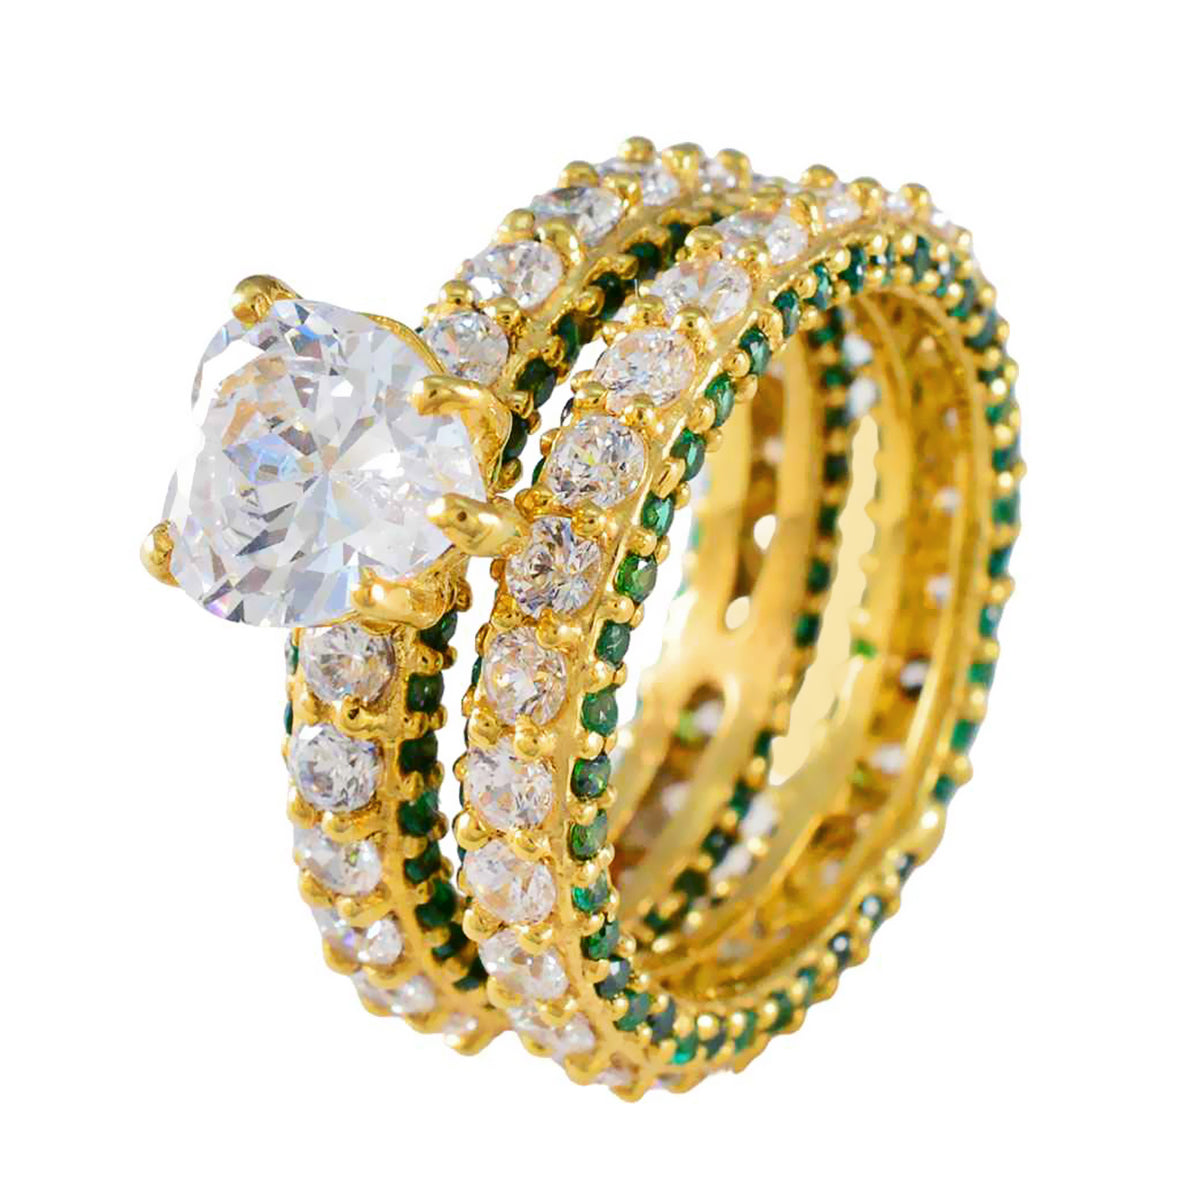 riyo in quantità anello in argento con placcatura in oro giallo smeraldo cz pietra a forma di cuore con montatura a punta anello di pasqua gioielli di moda